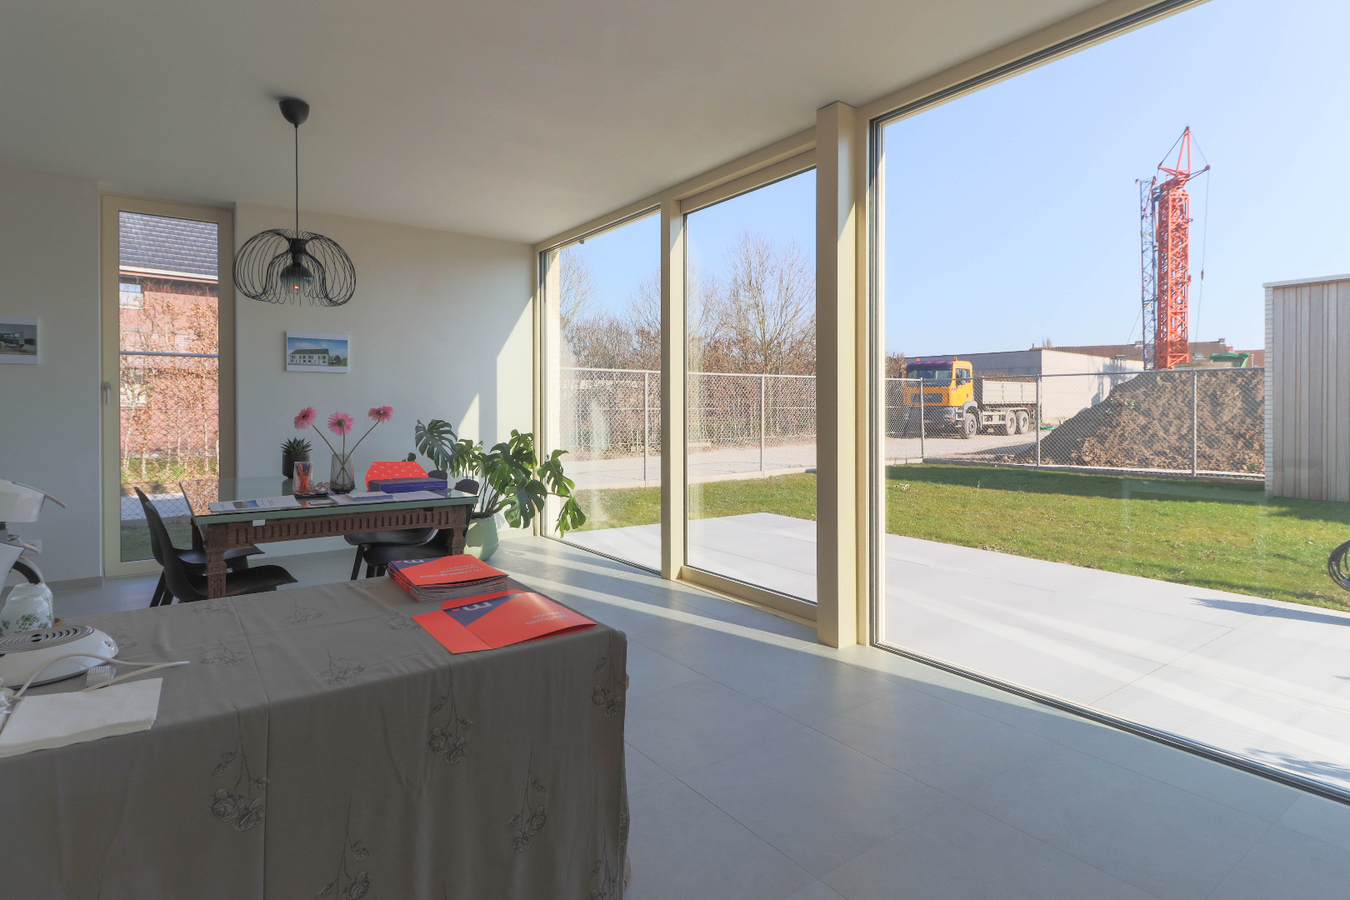 Moderne nieuwbouwwoningen met garage in groene omgeving te Kuurne 